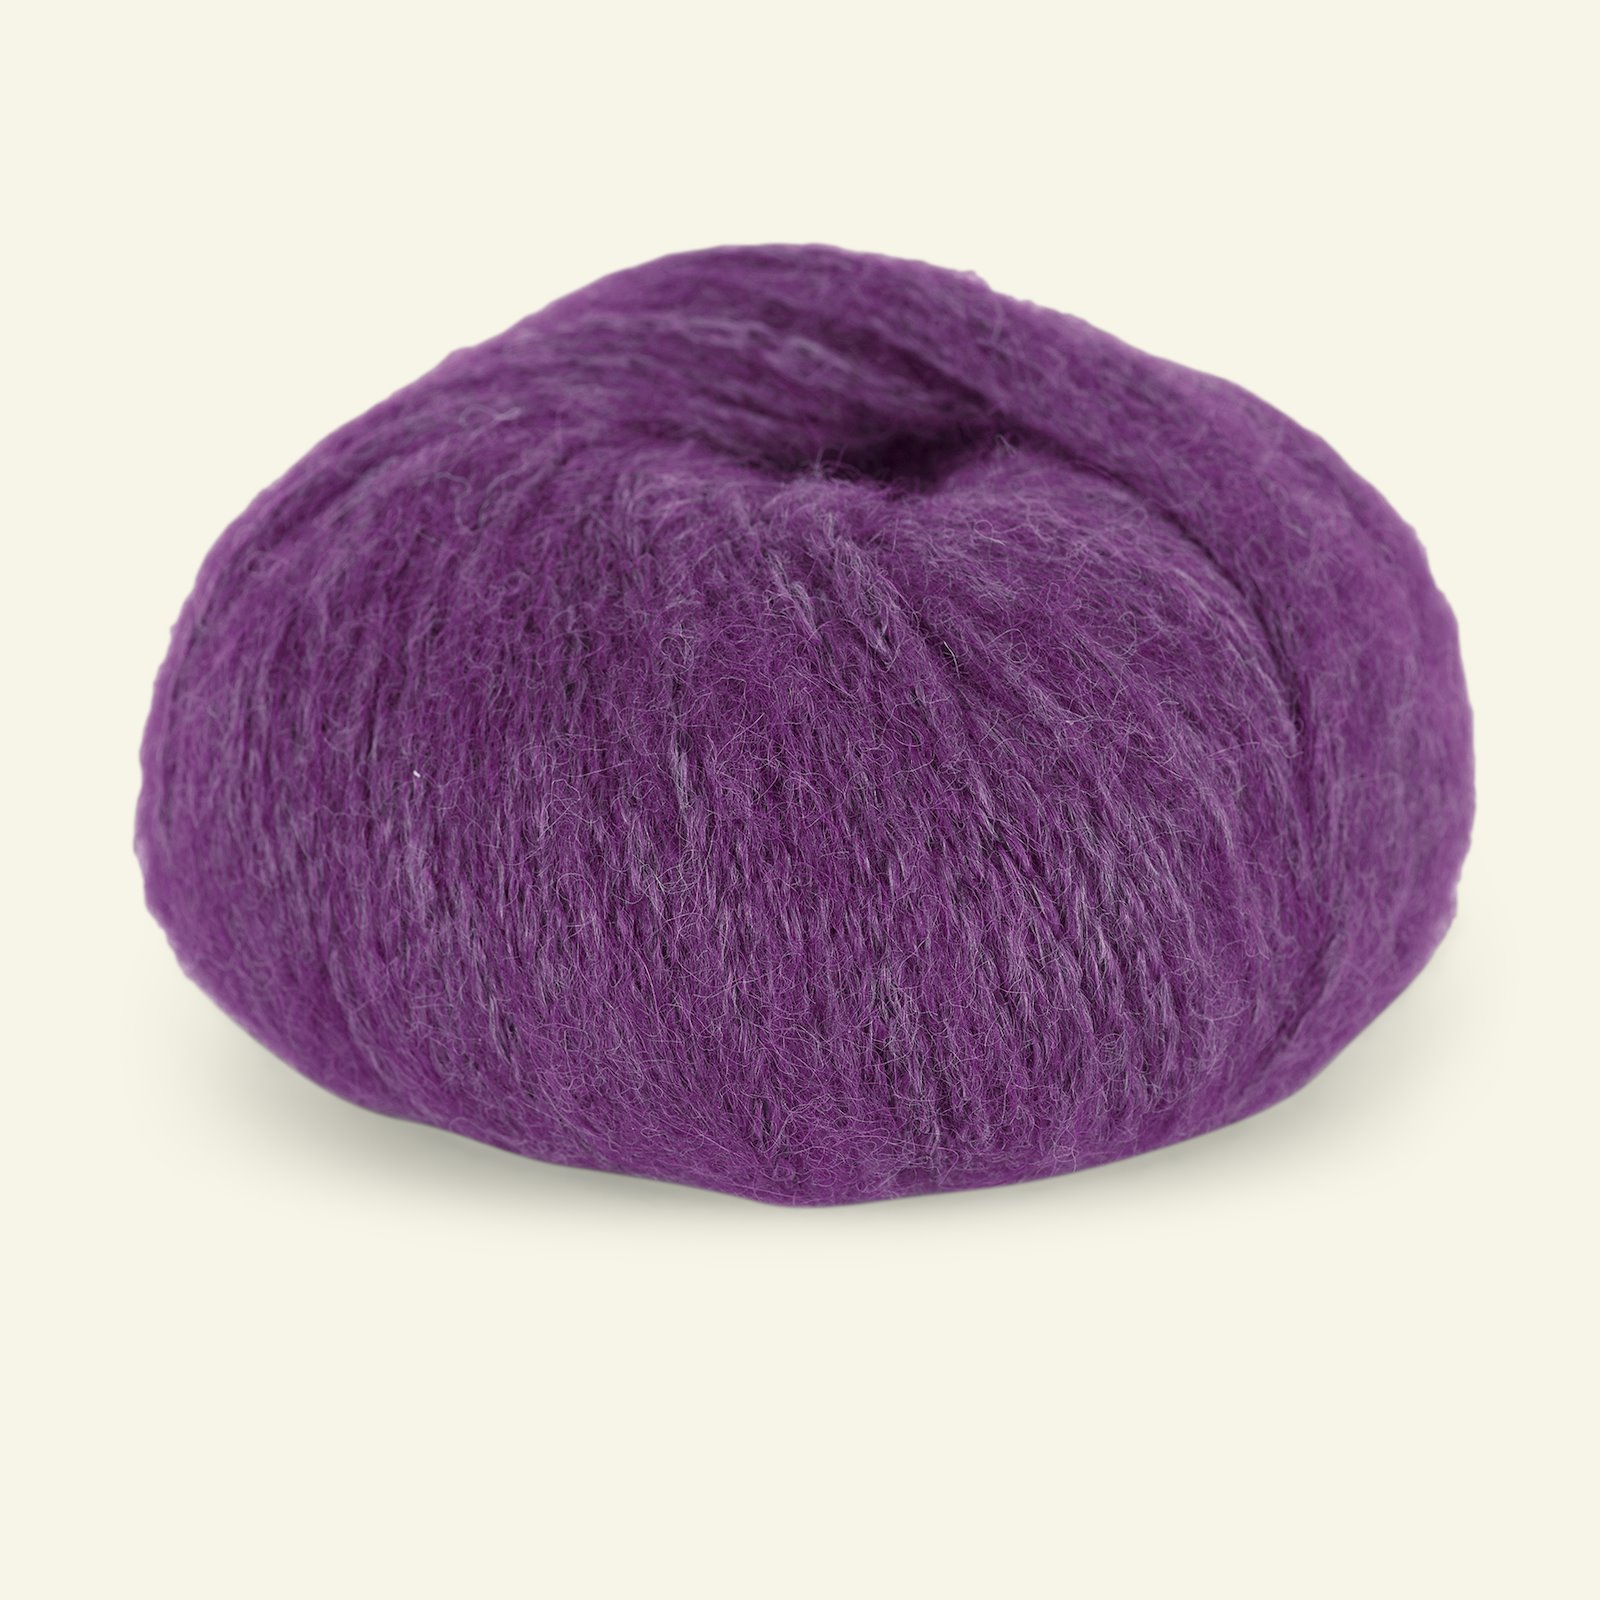 Du Store Alpakka, alpaca mixed yarn "Pus", purple (4060) 90000740_pack_b